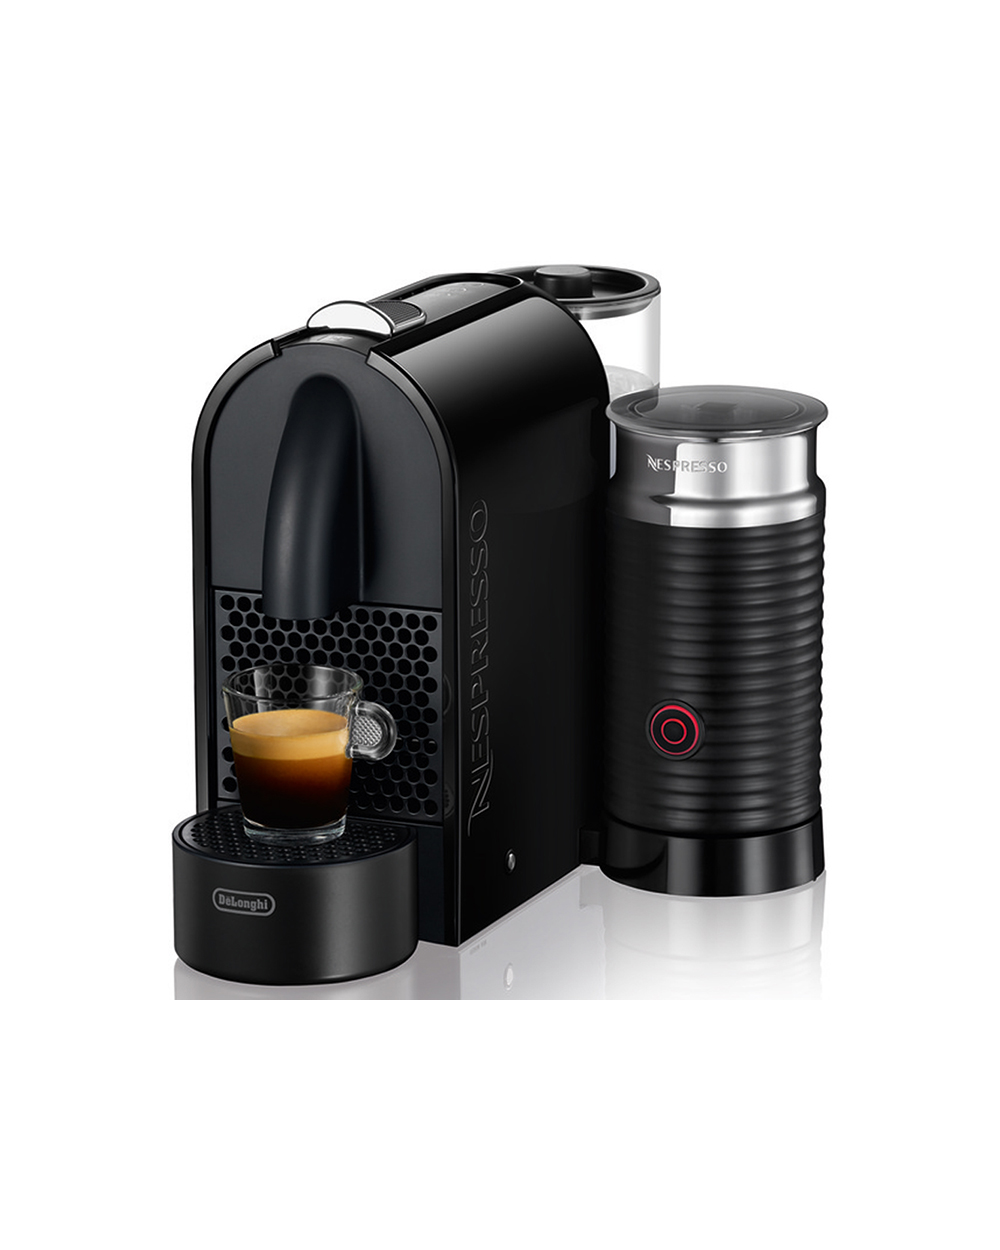 Nespresso DeLonghi Black & Integrated Aeroccino, $379, from Nespresso